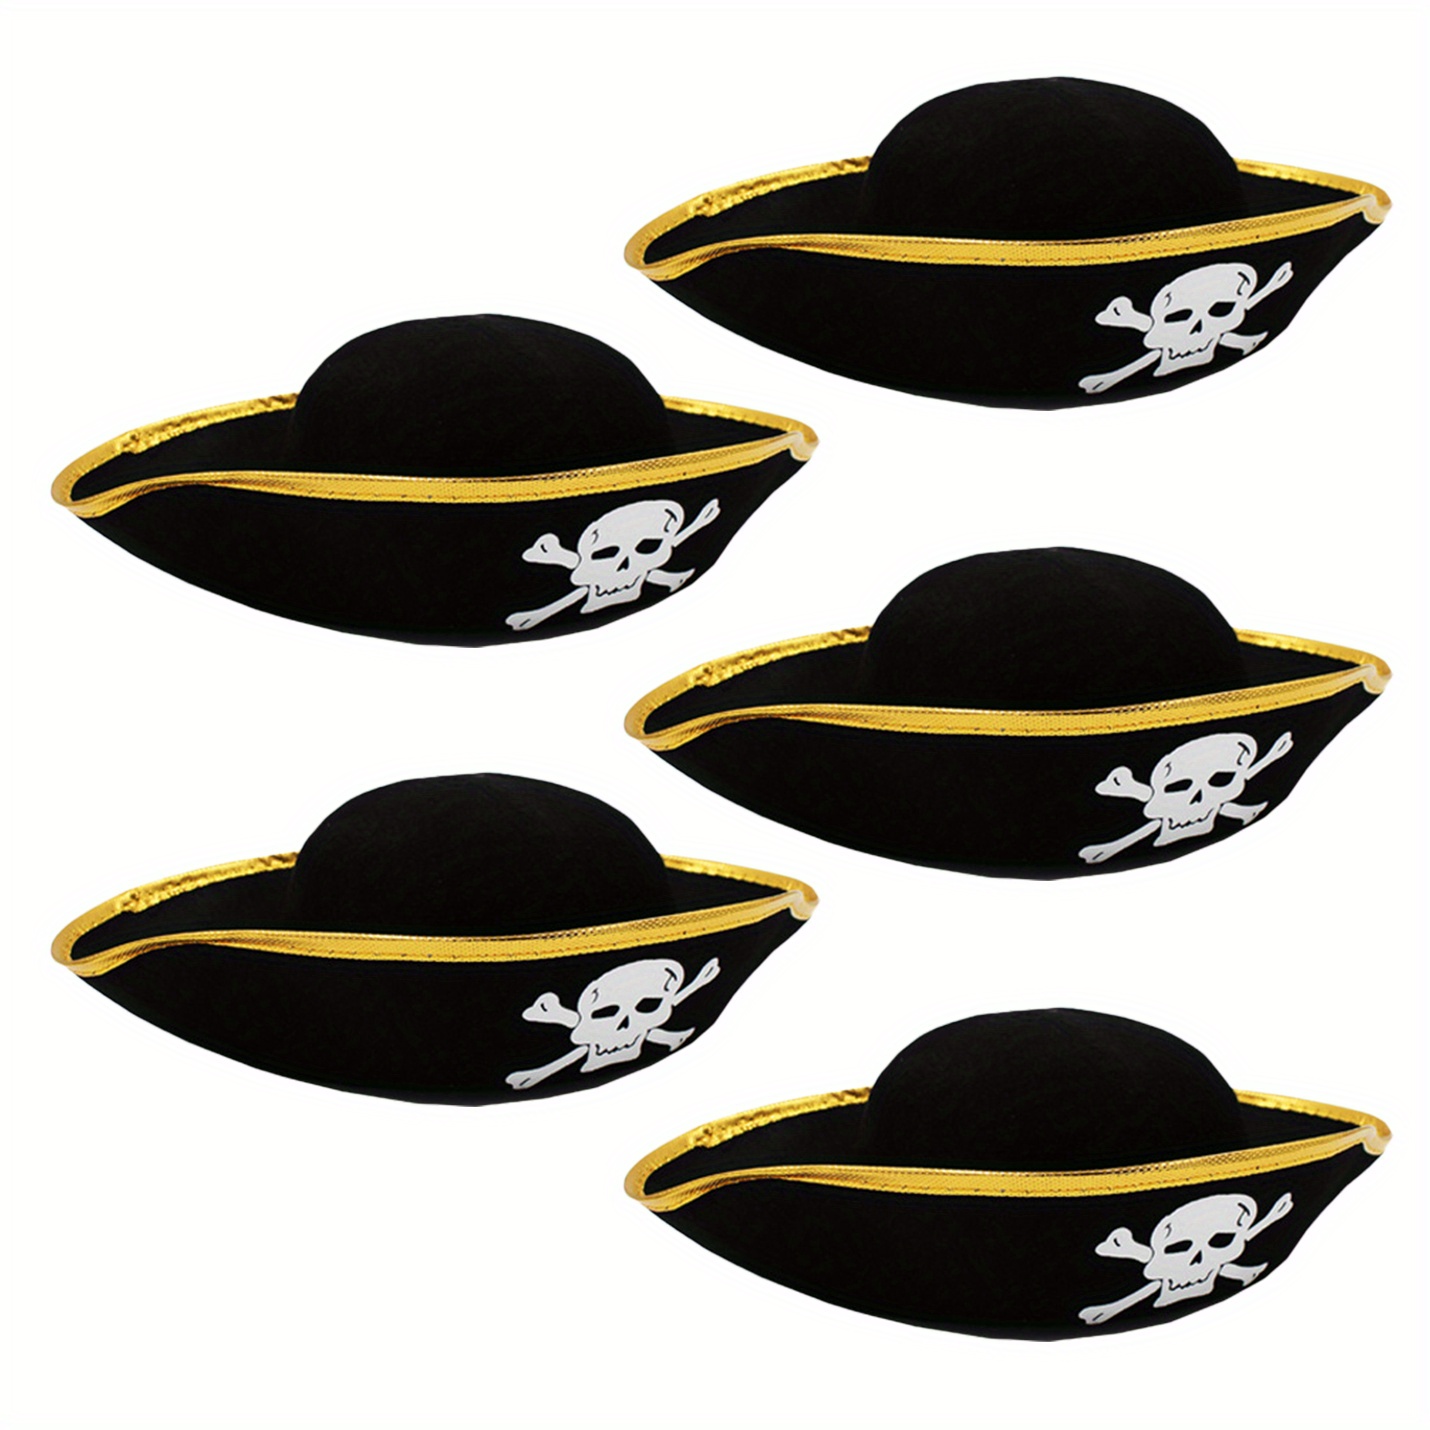 Boland 81901 - Sombrero pirata Fanny para adultos, negro y dorado, pirata,  sombrero, disfraz, carnaval, fiesta temática : : Juguetes y juegos